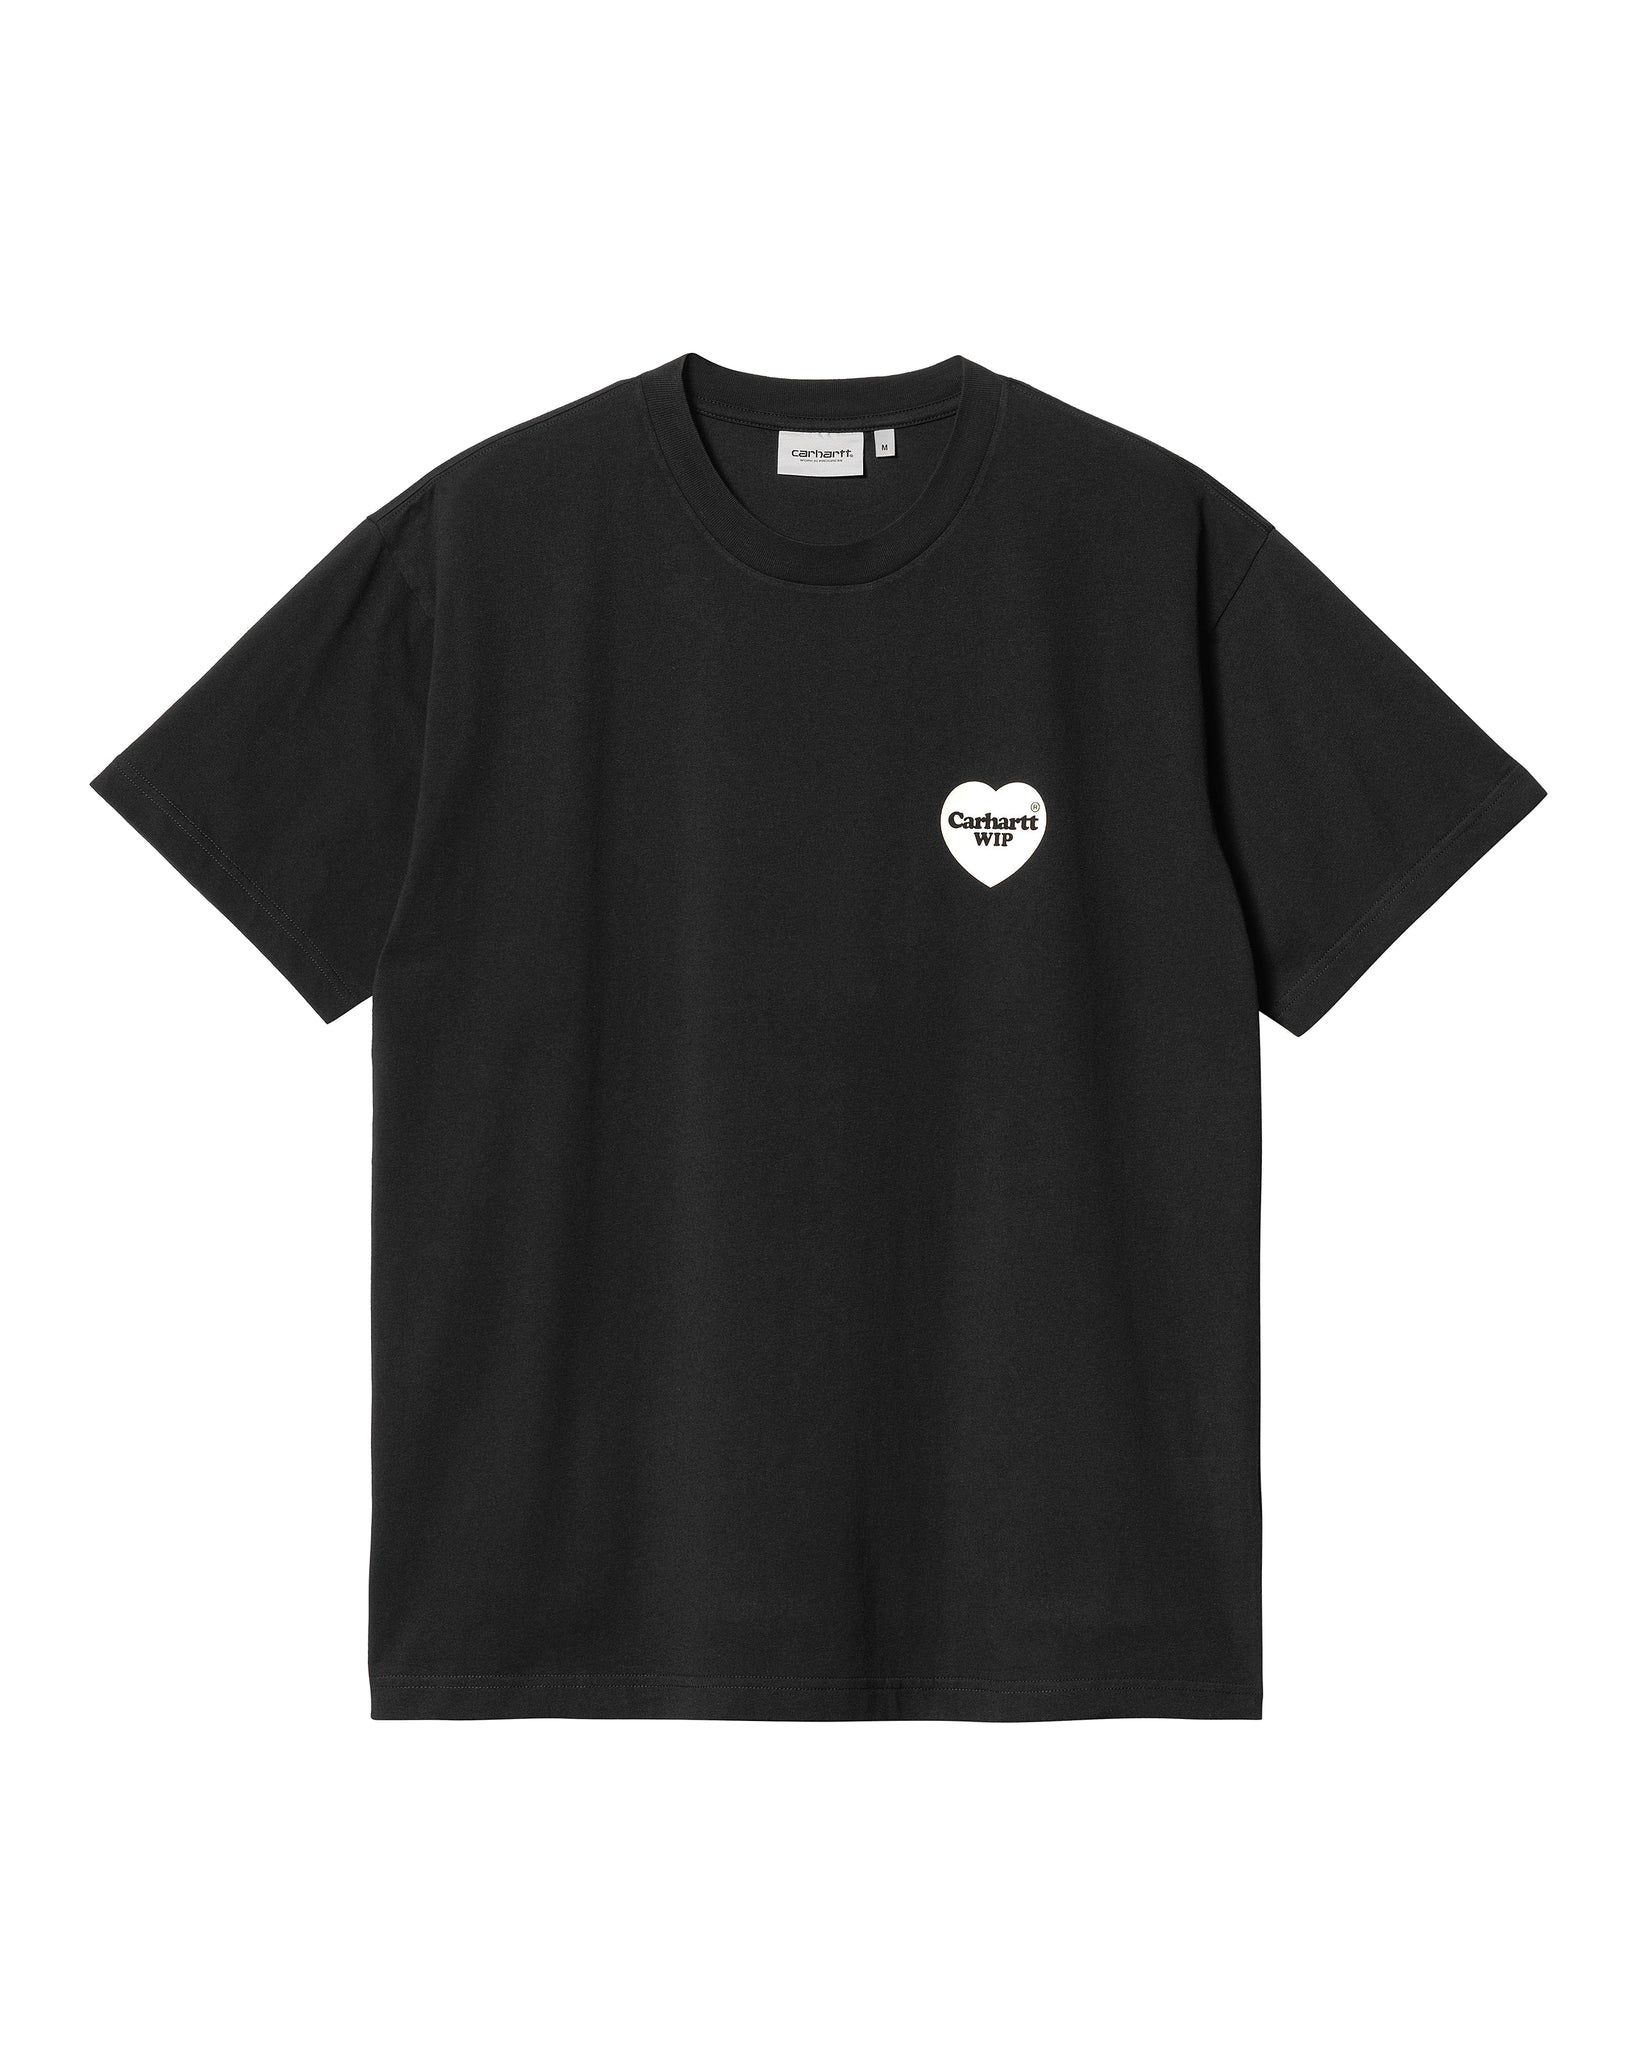 T-shirt S/S Heart Bandana - Black/White (stone washed)